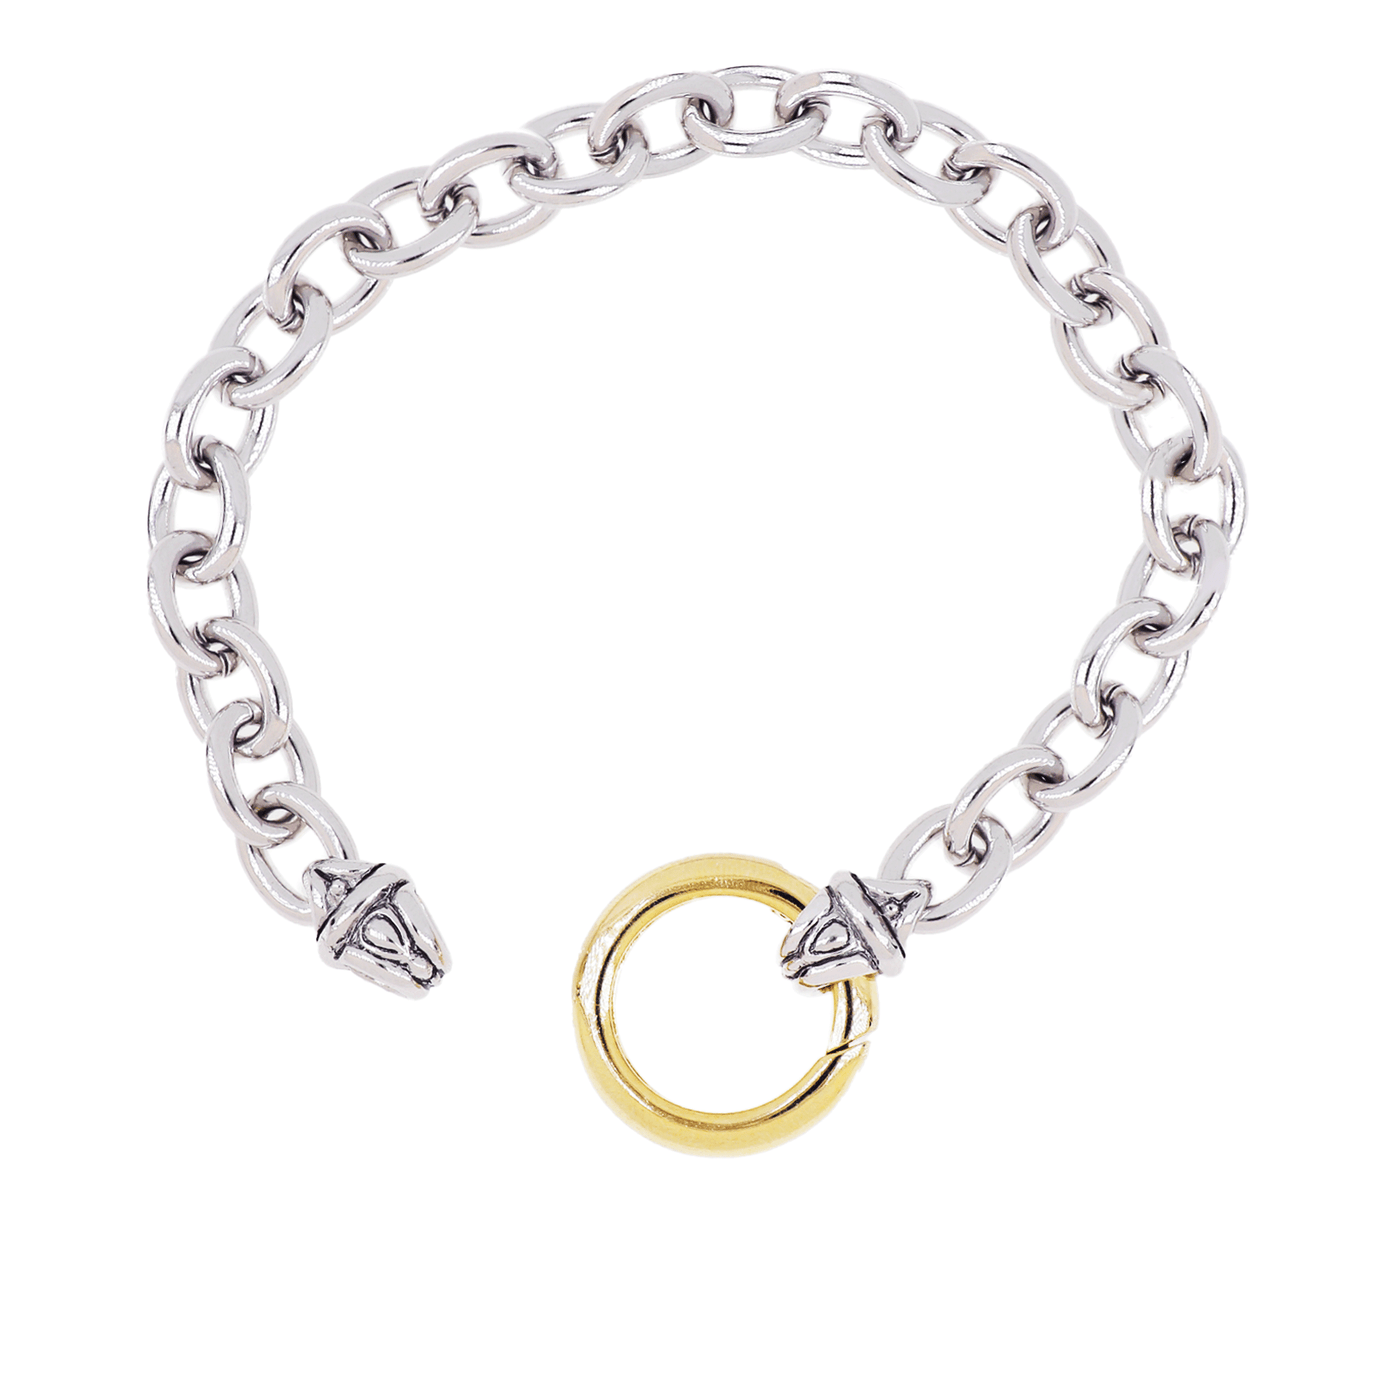 7” Large Link Spring Ring Bracelet